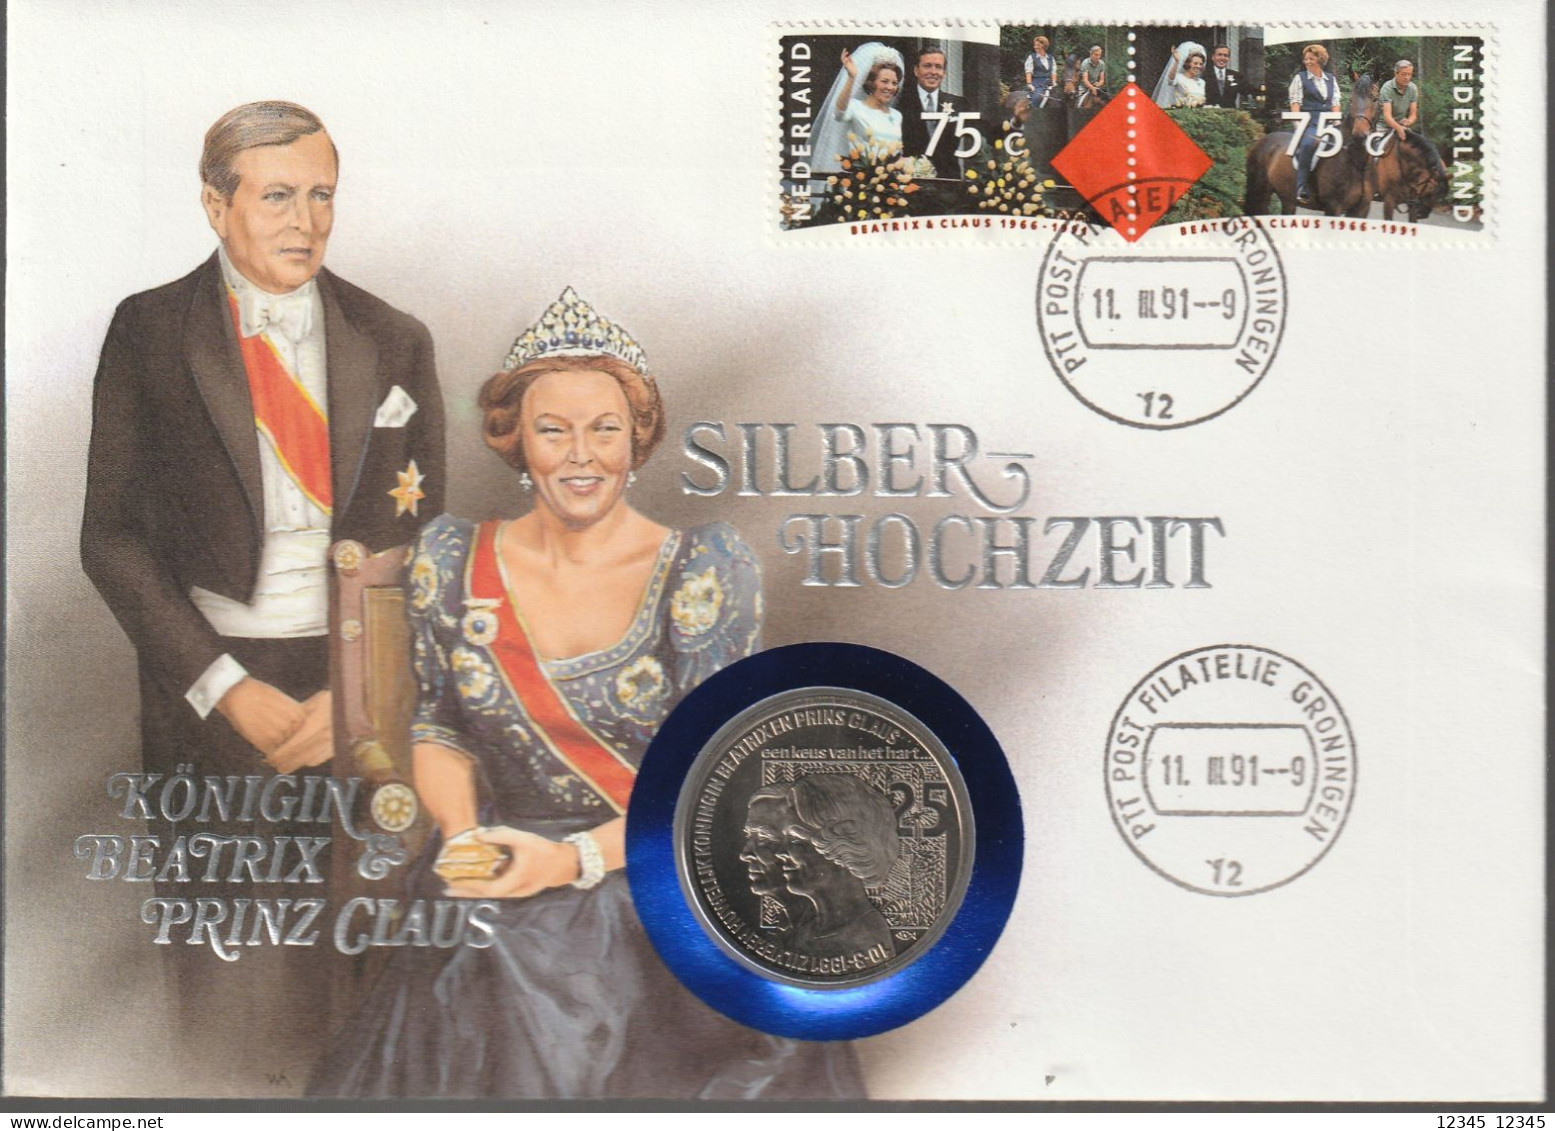 1991, Coincard, Königin Beatrix & Prinz Claus, Silberhochzeit - Numisbriefe